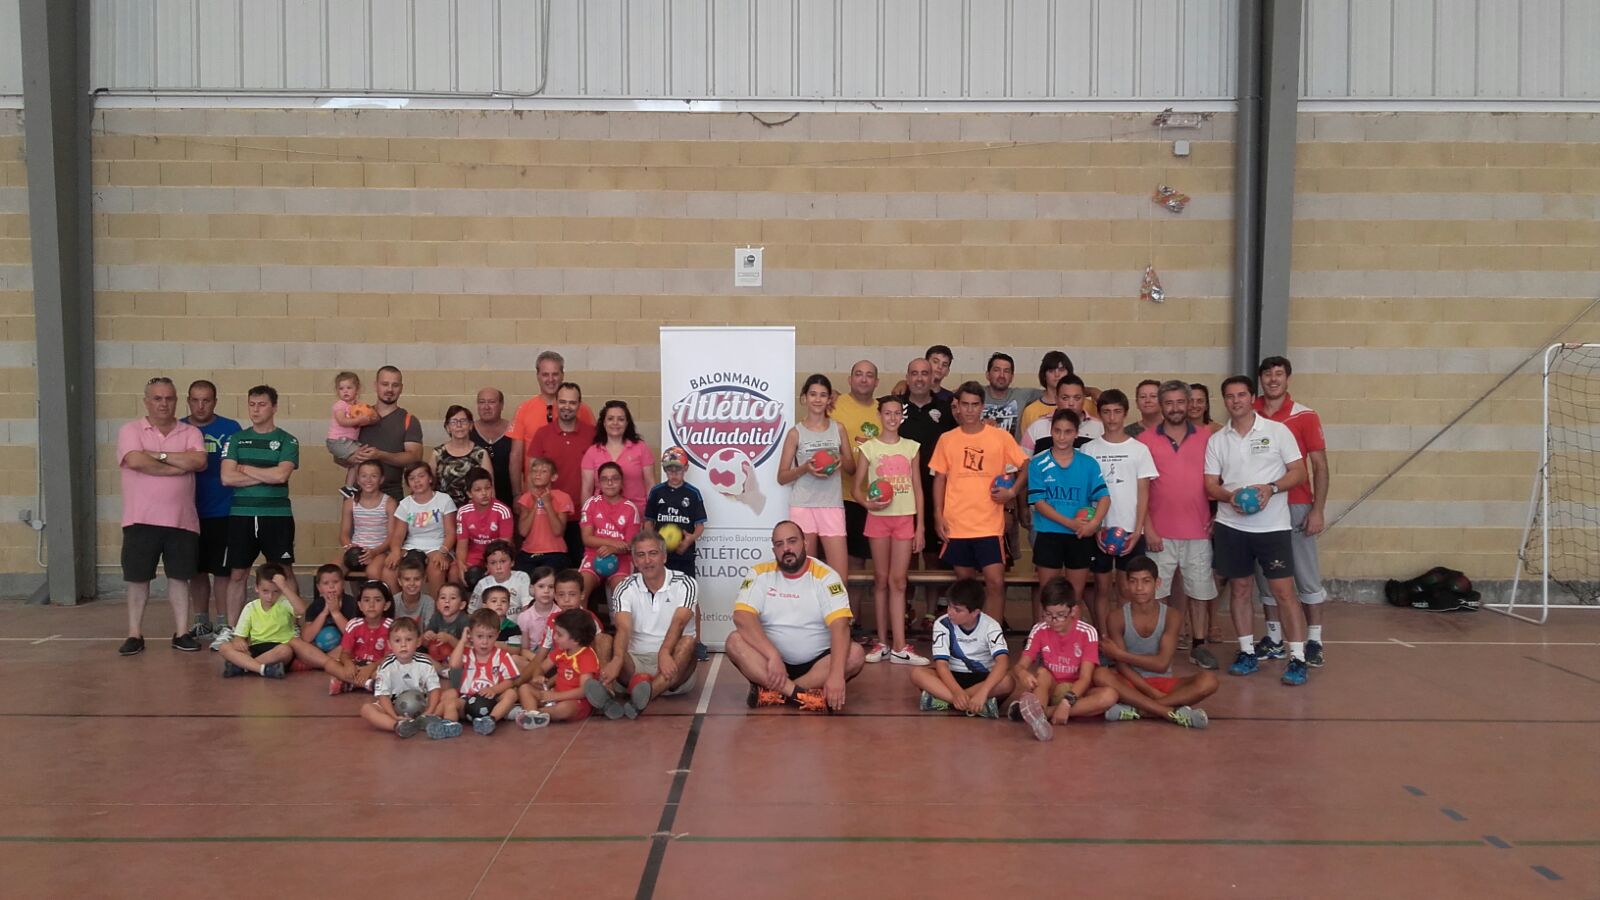 Villabrágima acogió de nuevo la jornada de balonmano del programa A Jugar! del Recoletas Atlético Valladolid | Galería 2 / 3